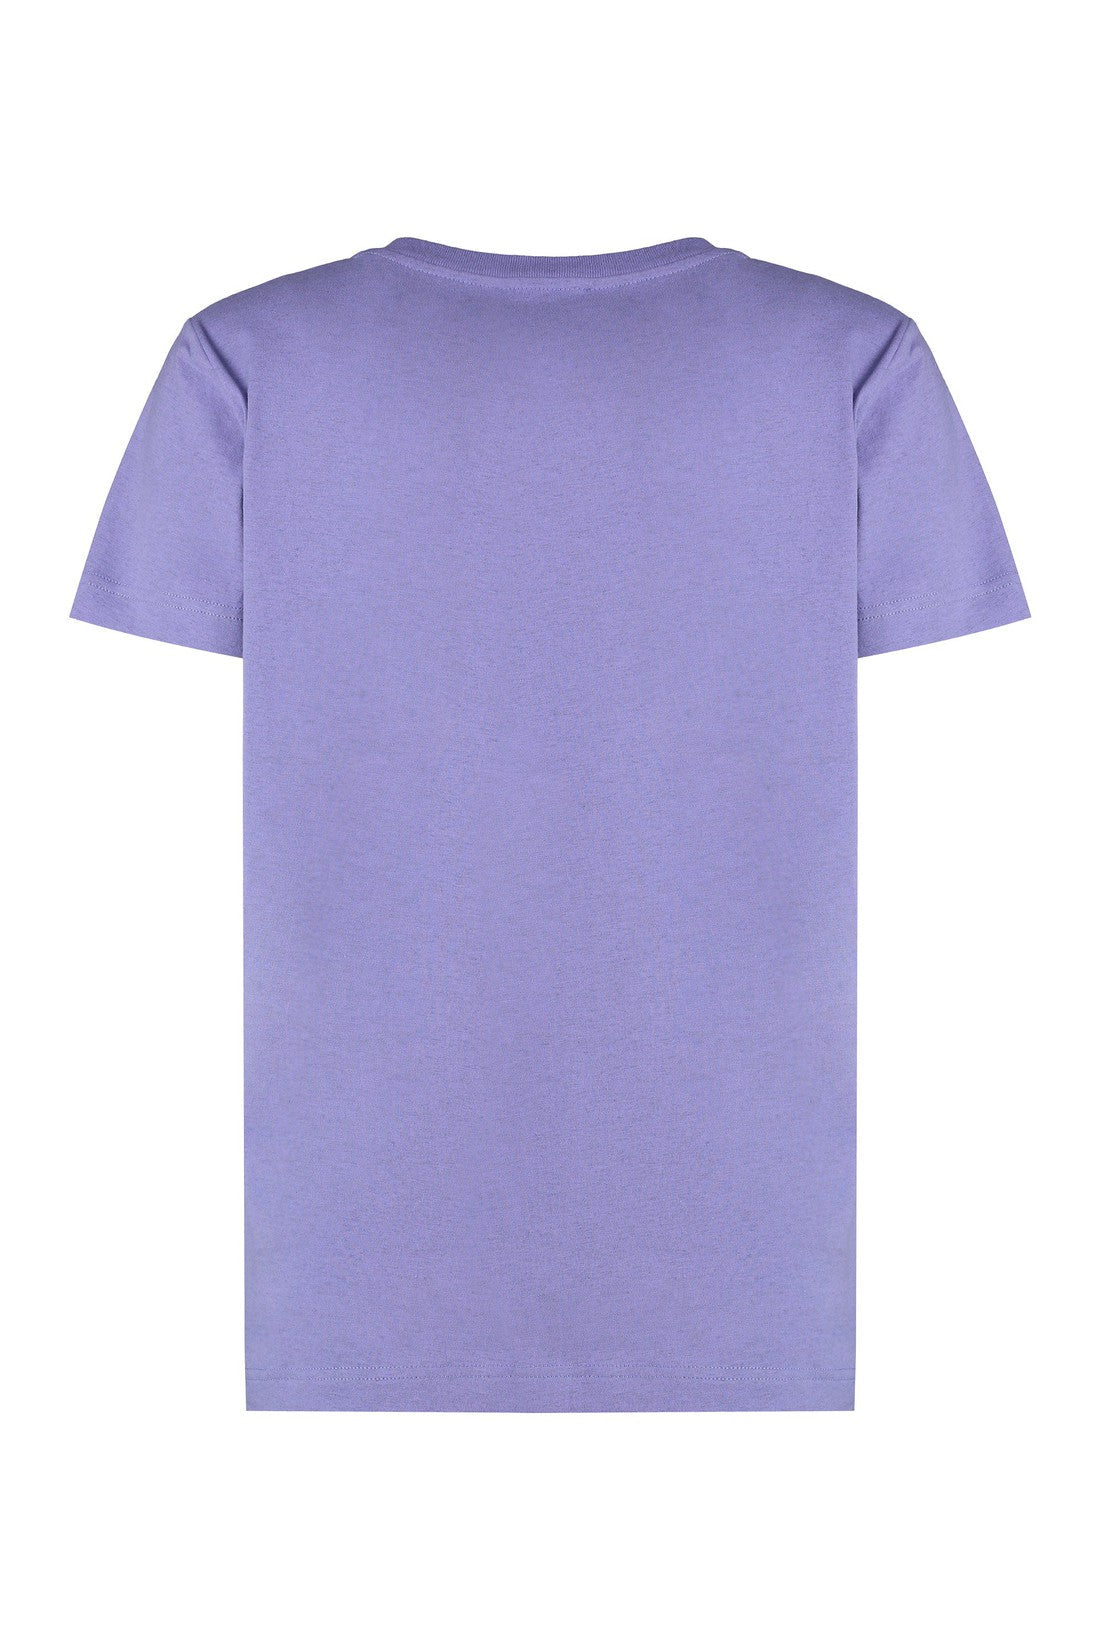 A.P.C.-OUTLET-SALE-Item Cotton T-shirt-ARCHIVIST